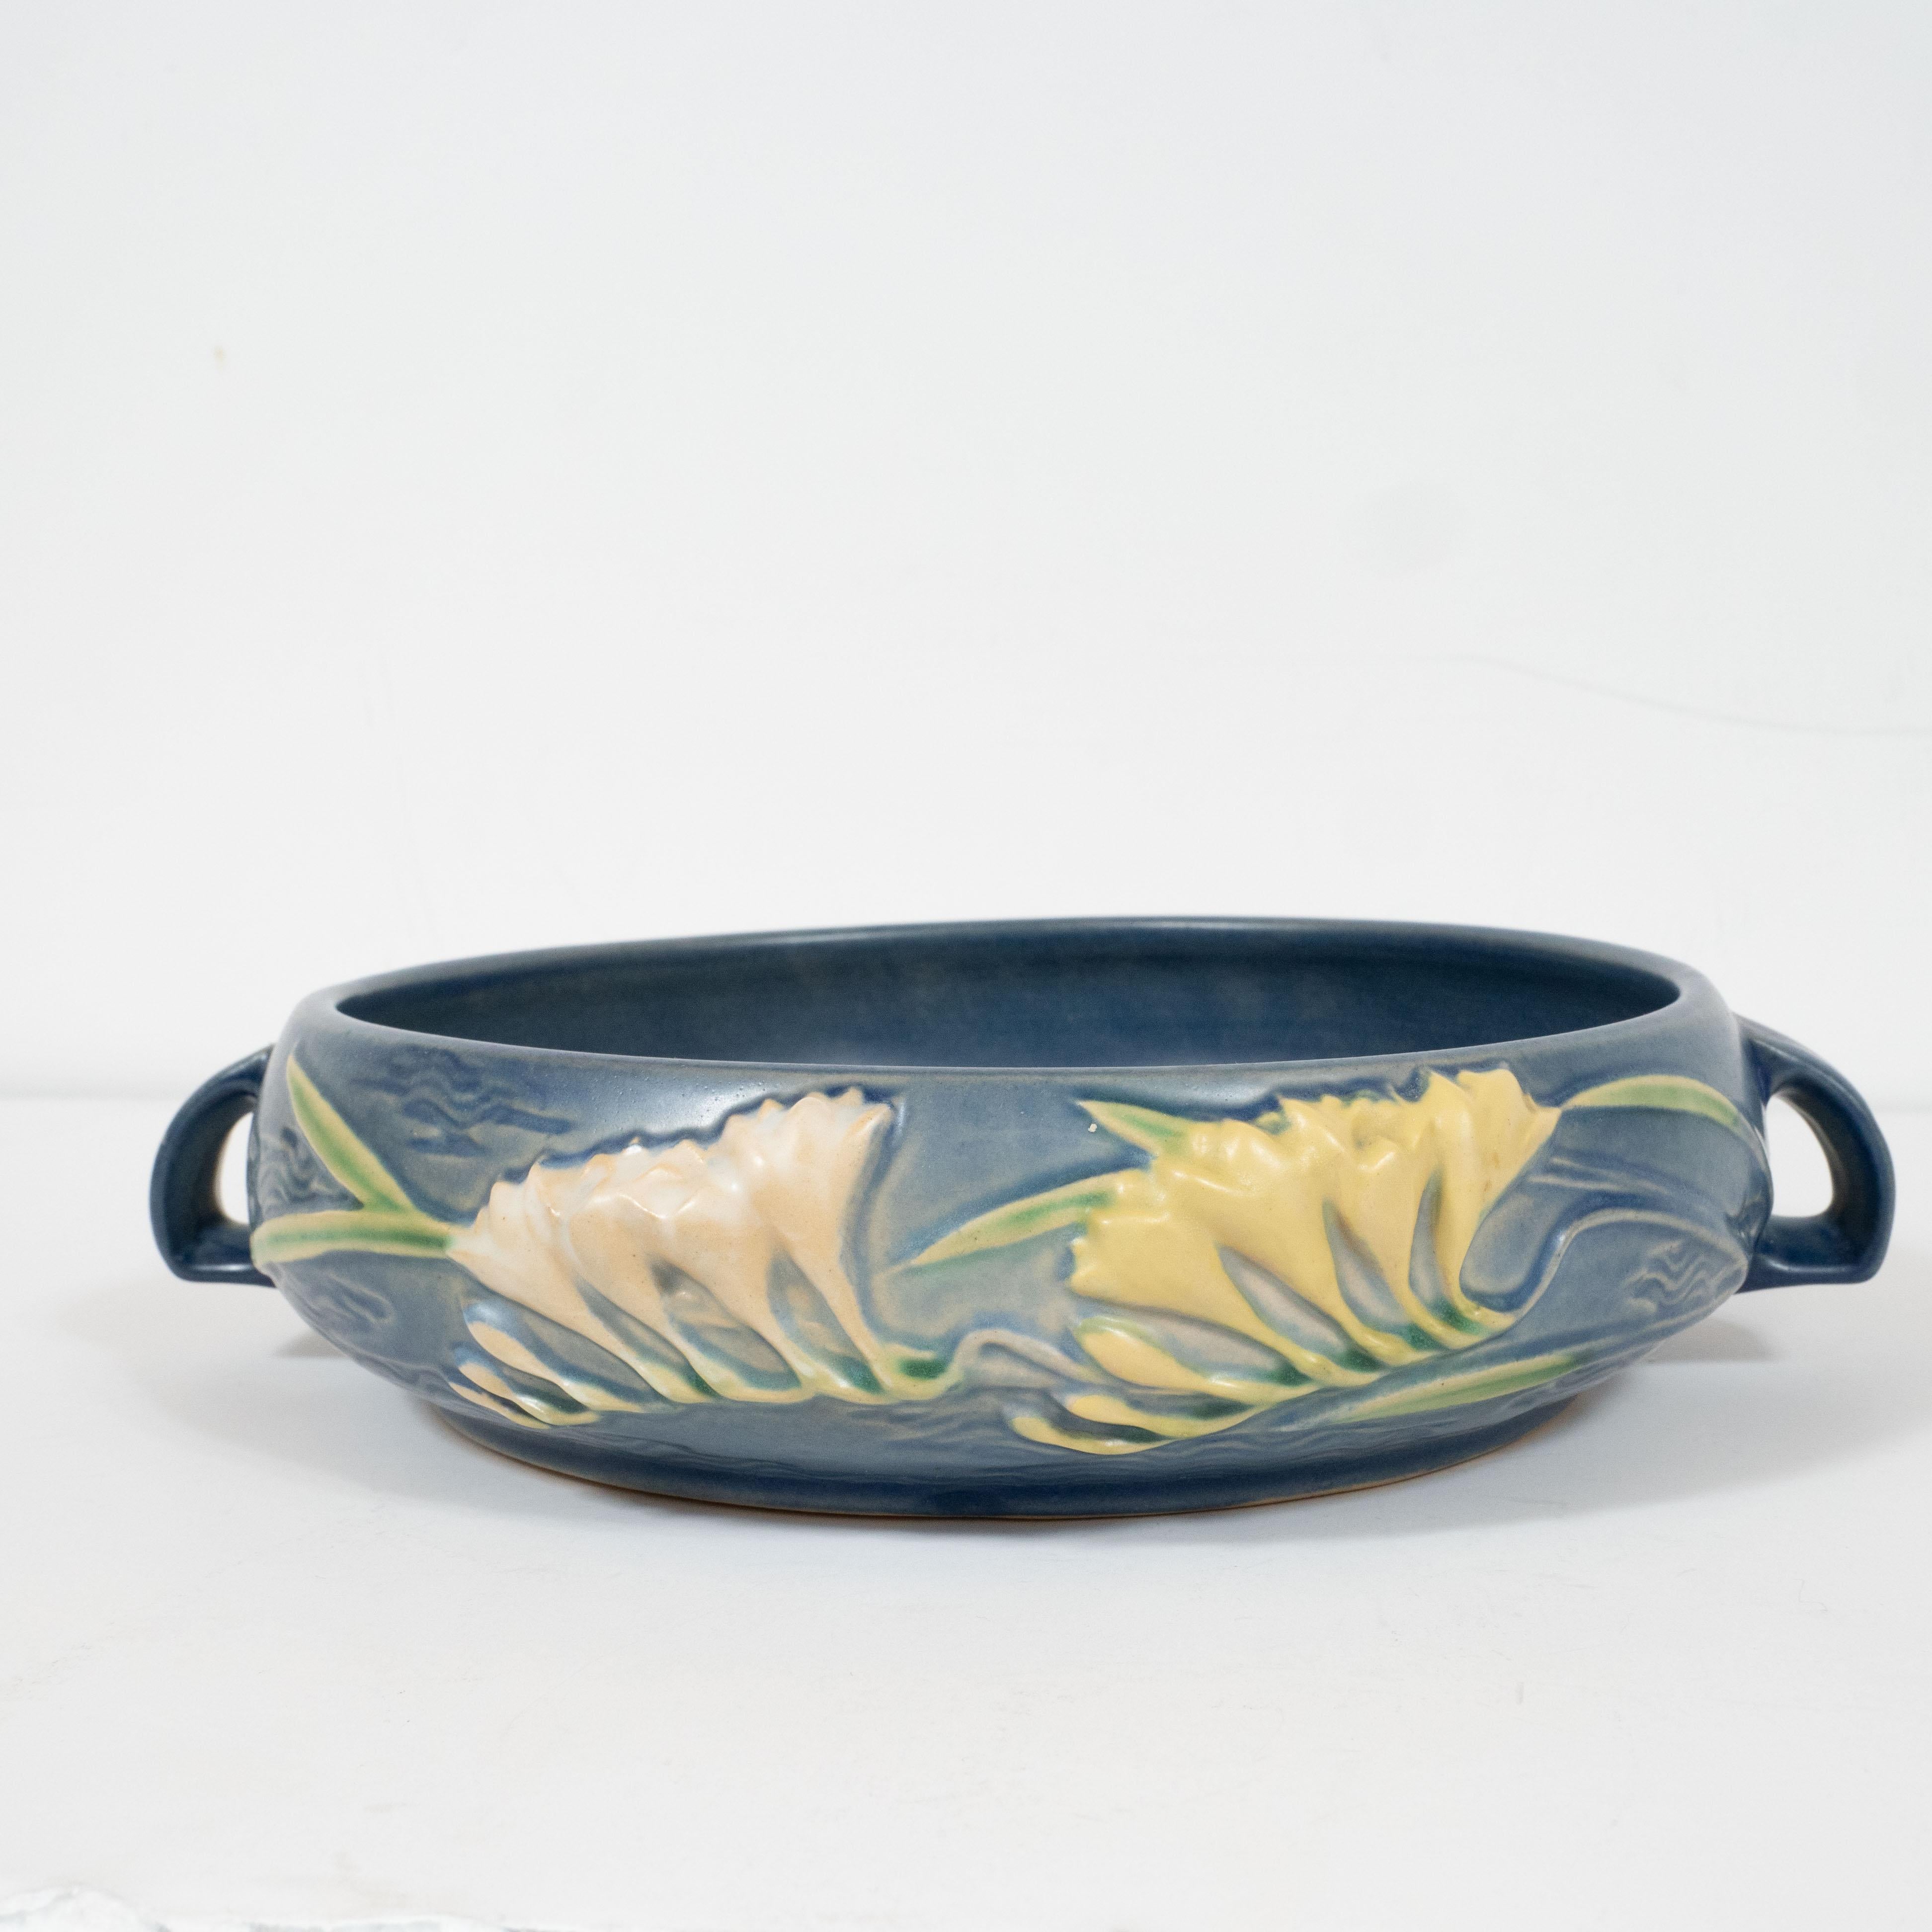 Diese elegante Art-Déco-Schale wurde um 1930 von dem angesehenen Hersteller Roseville Pottery in den Vereinigten Staaten hergestellt. Der gewölbte, runde Korpus ist in einem satten Indigo-Farbton gehalten, mit Maiglöckchenblüten in Relief und